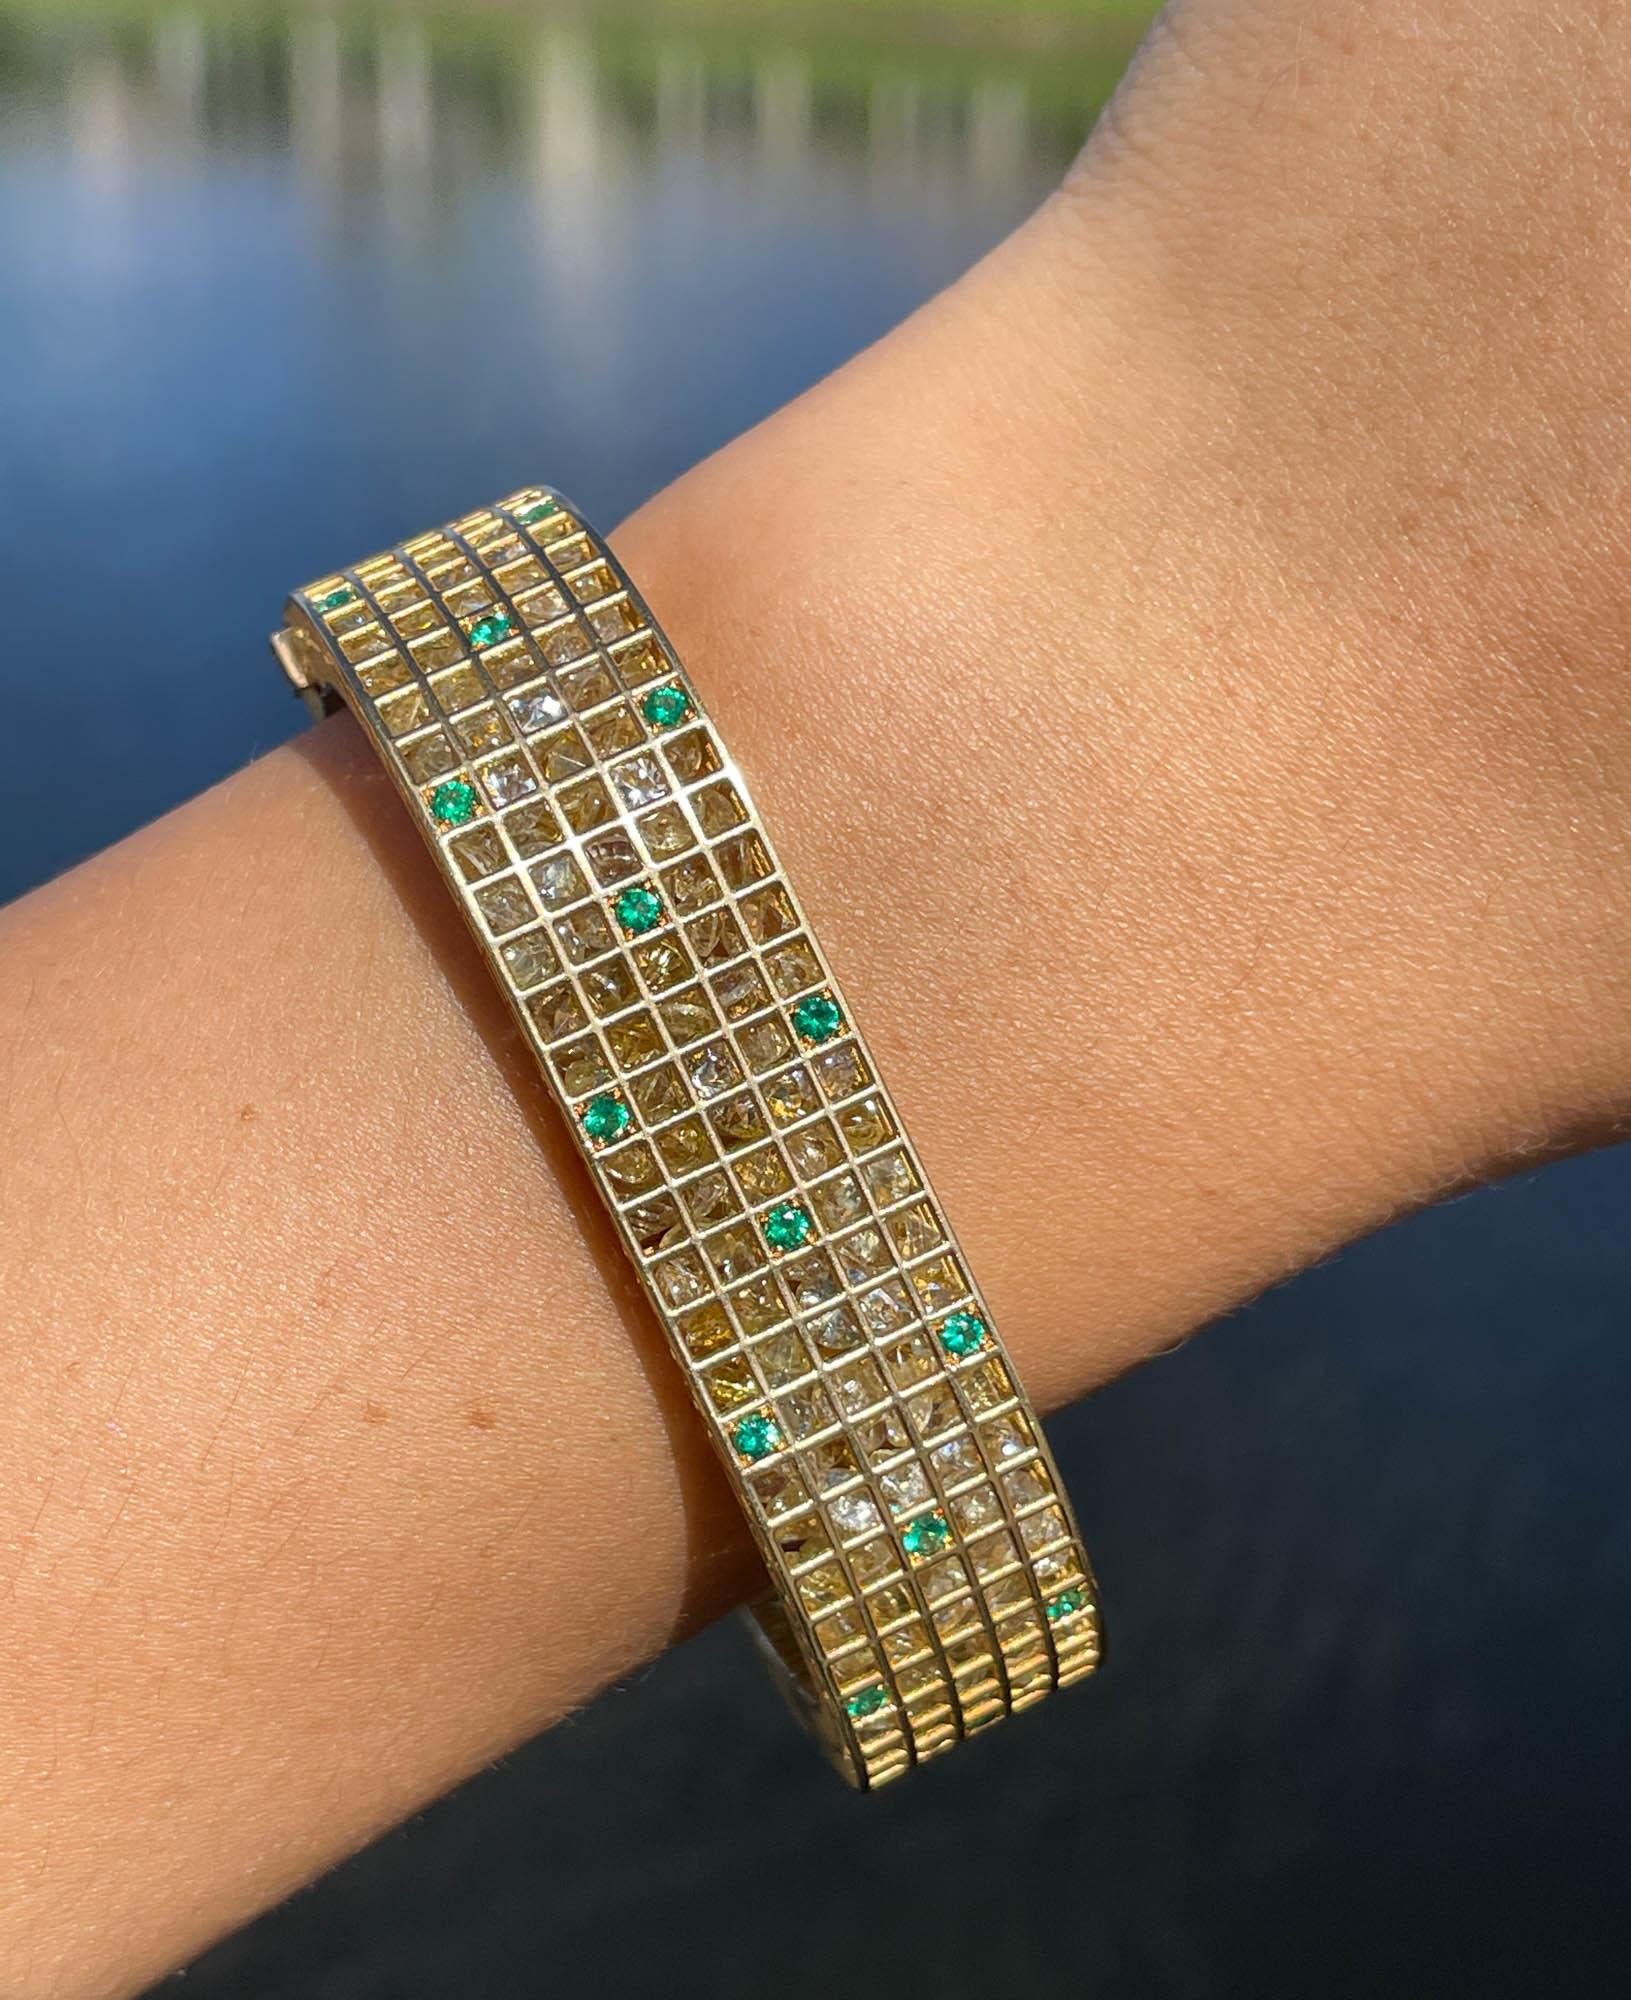 Roule & Company 18k Gelbgold Gelb Saphir Smaragd und Diamant Pixel Dust Armband 
Gesamtkaratgewicht: 91,05ctw gelbe Saphire; 0,97ctw grüne Smaragde und 0,15ctw Diamanten.
Das Armband ist 14,24 mm breit und passt in Größe 7 Zoll. Das Gesamtgewicht